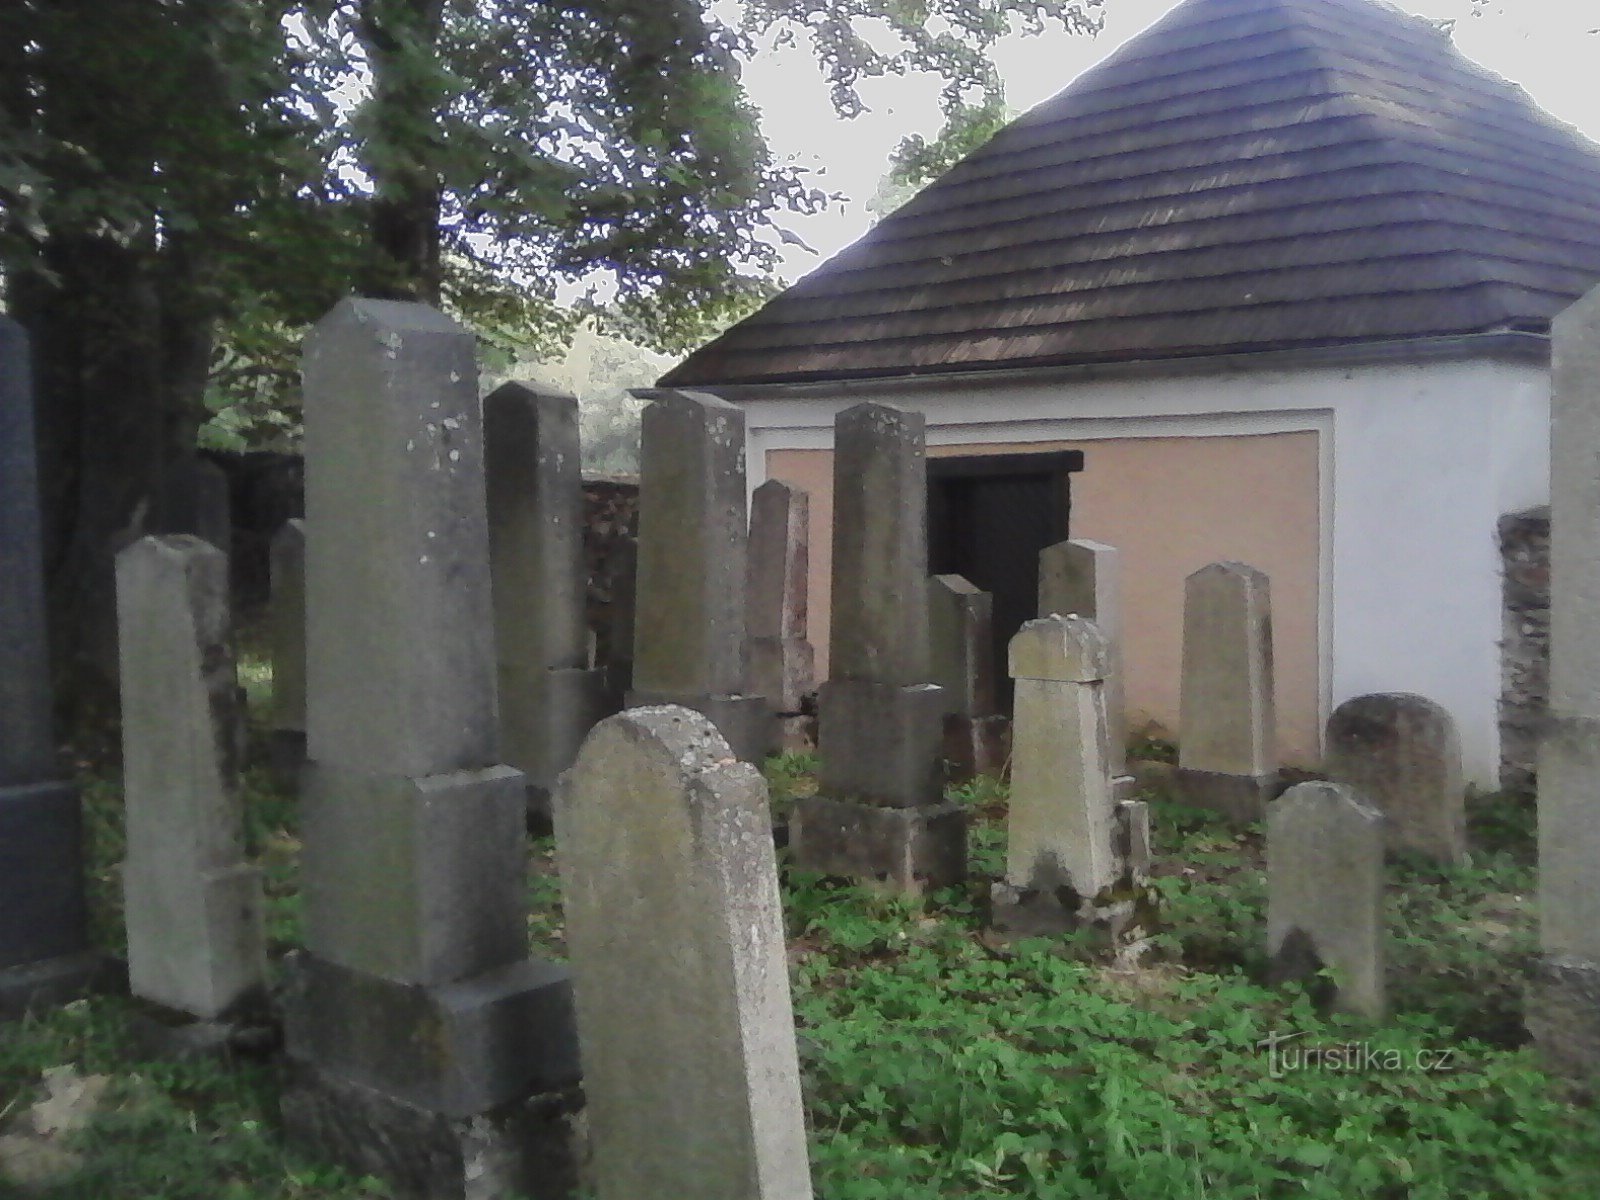 2. Цвинтар у Черновіце, заснований у 17 ст., найстаріші надгробки з кінця 17 ст.